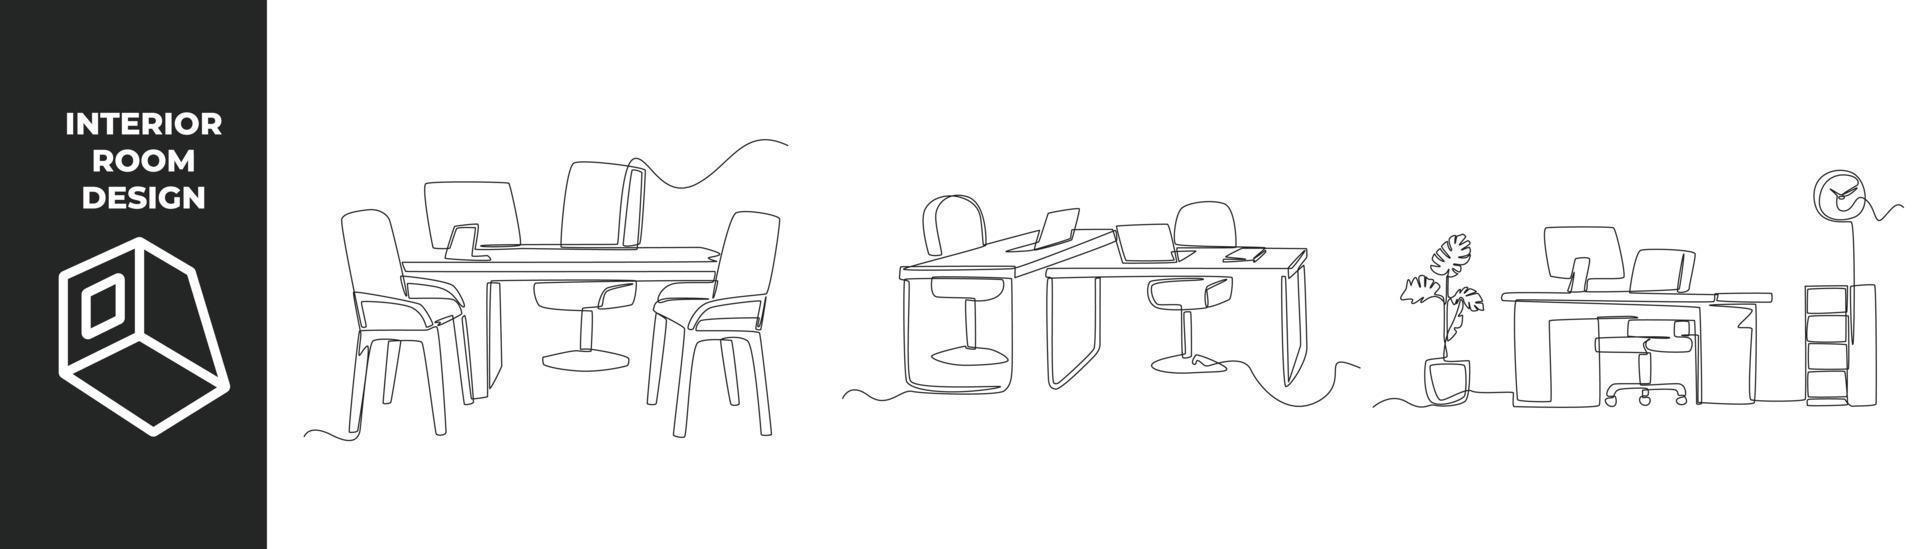 single een lijn tekening kantoor interieur concept. kantoor bureau, stoel, computer, kast en fabriek. doorlopend lijn trek ontwerp grafisch vector illustratie.